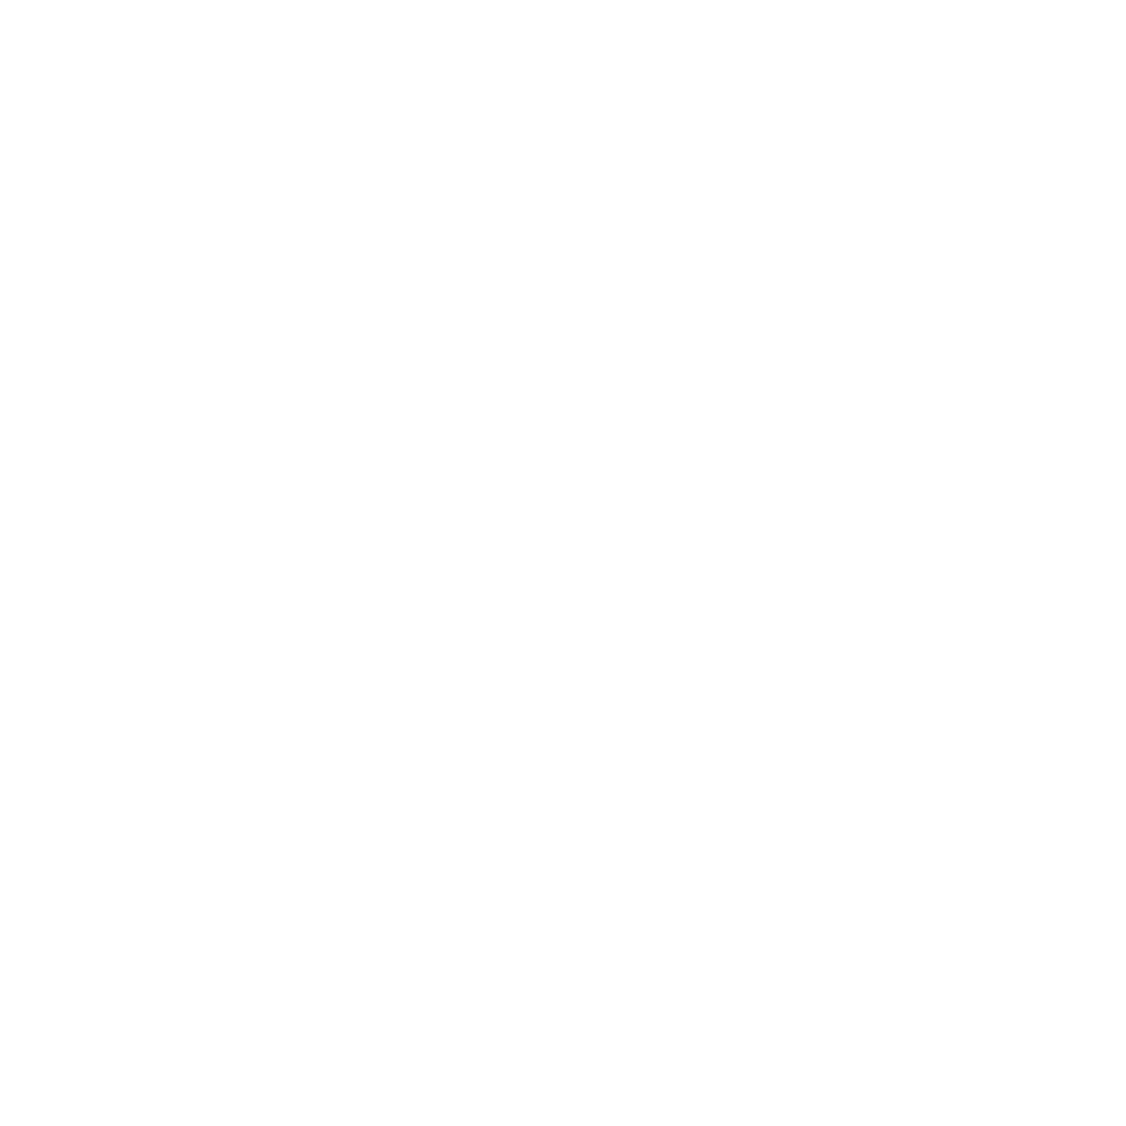 Oxford Storytelling Festival